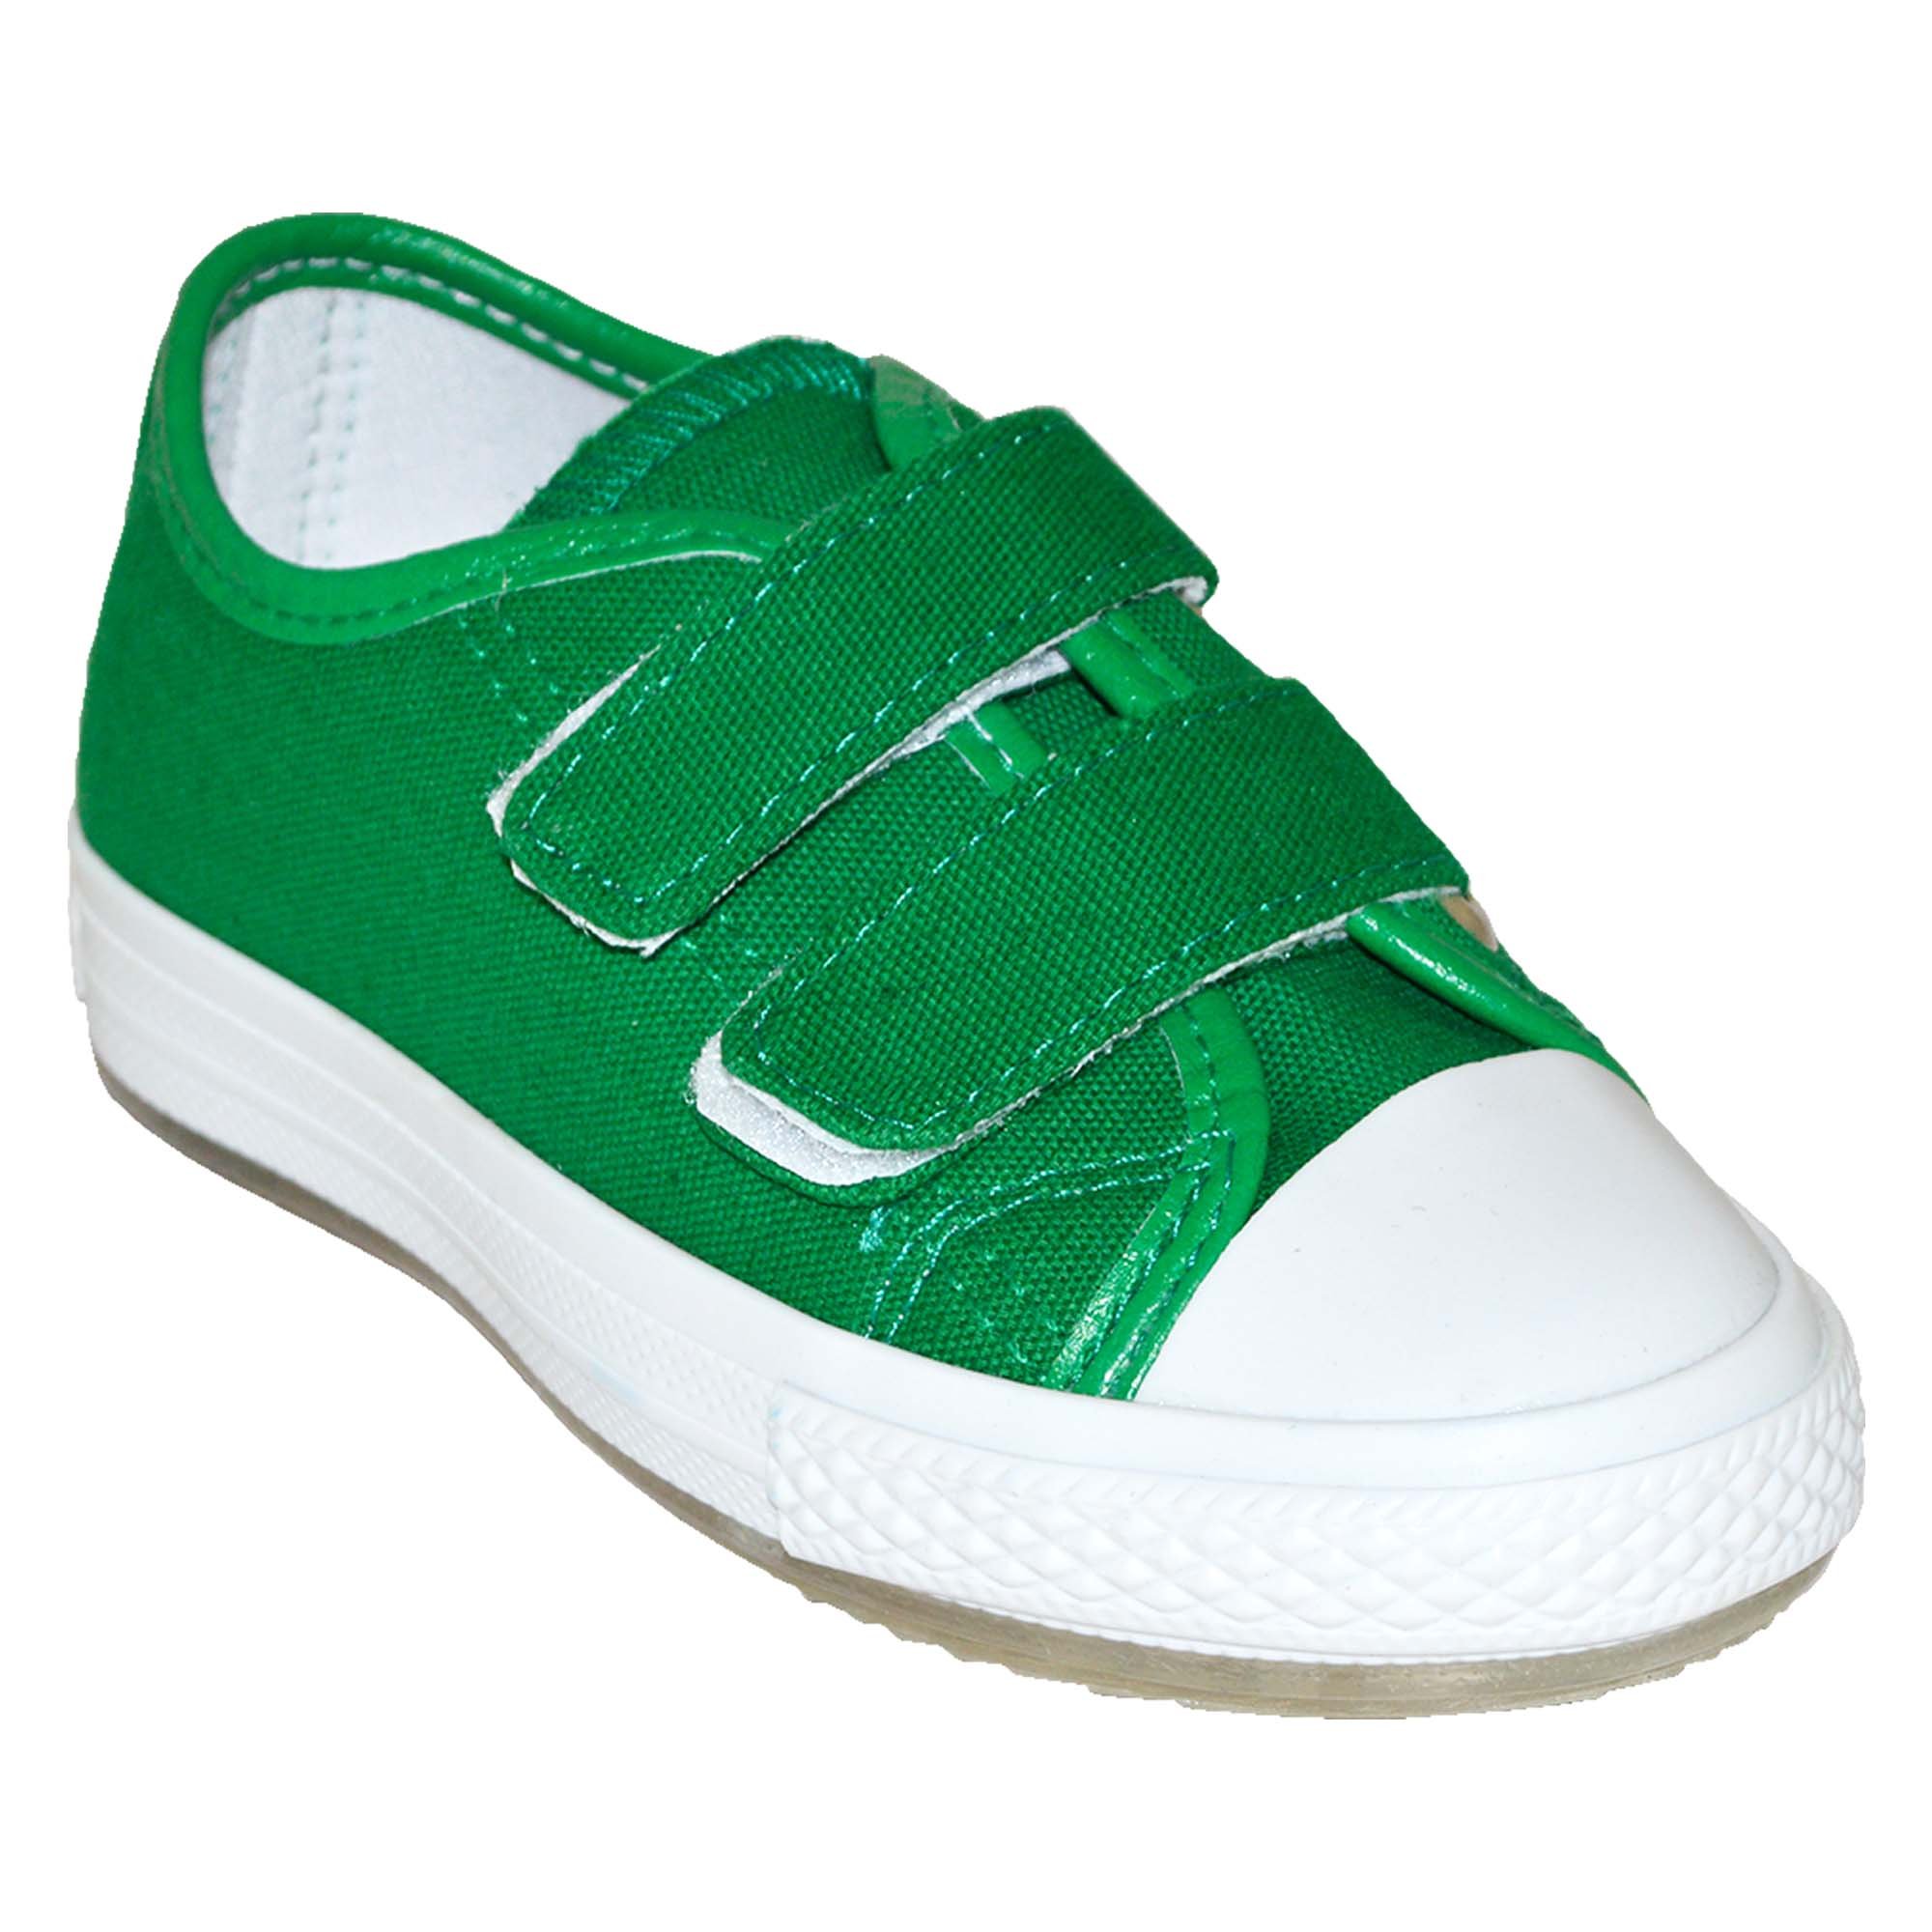 Filet Spor Ayakkabı - Yeşil